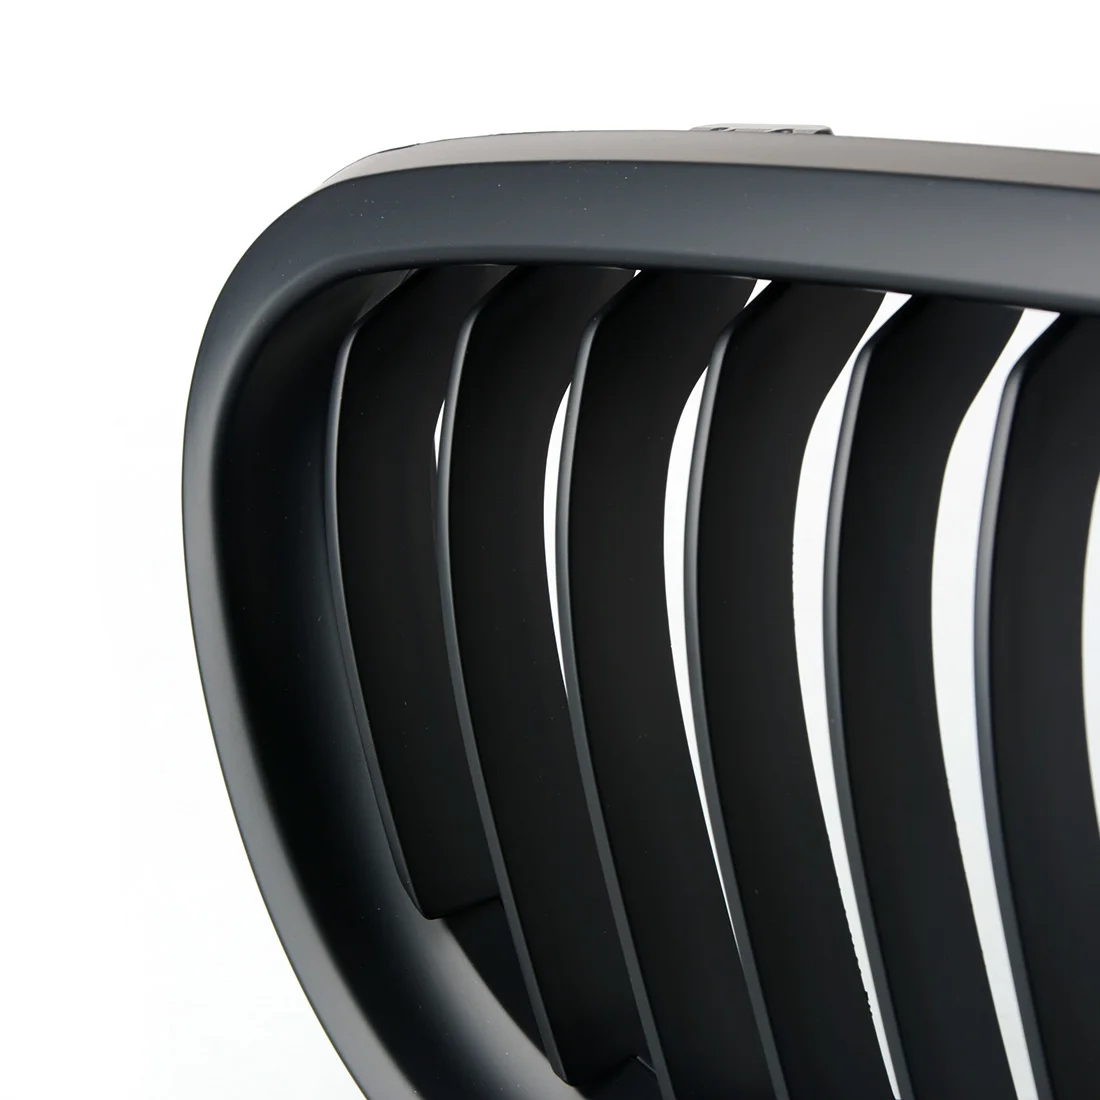 1 шт. автомобильные решетки автомобиля-Стайлинг гриль для BMW 3-serise E90 LCI седан матовый черный Передняя решетка решетки 09-11